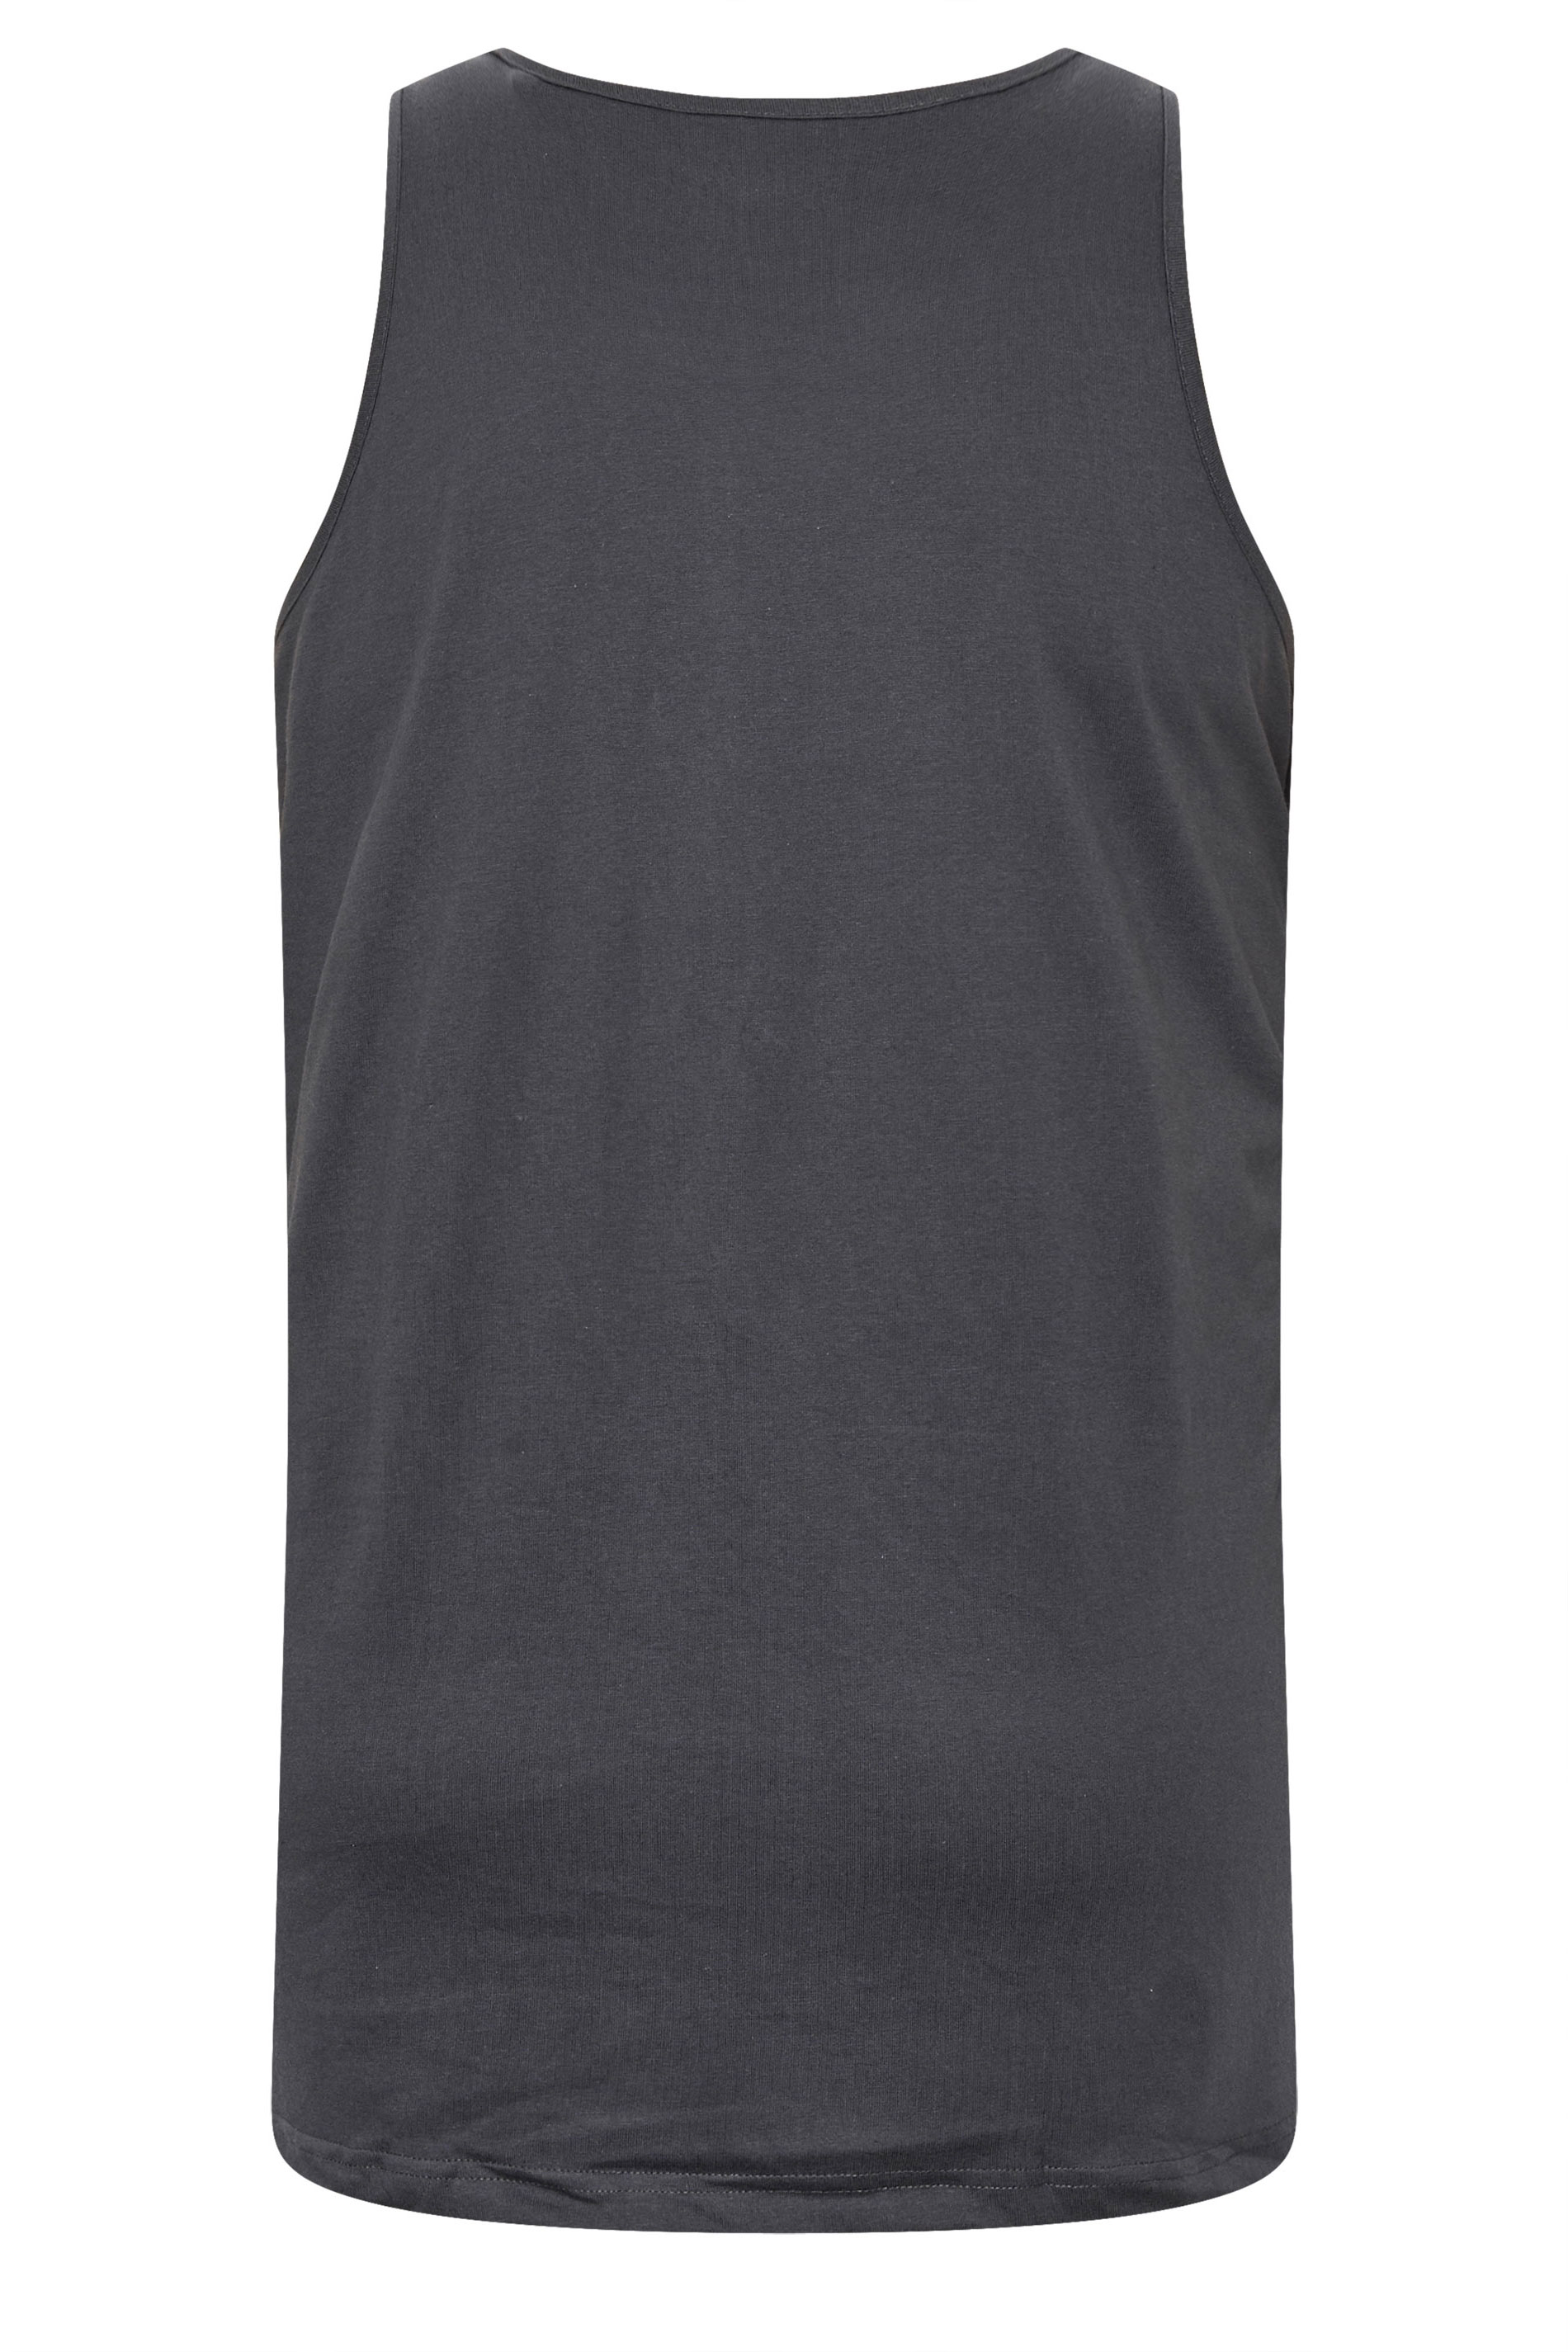 BadRhino Big & Tall Grey 'Adventure' Chest Print Vest | BadRhino 3